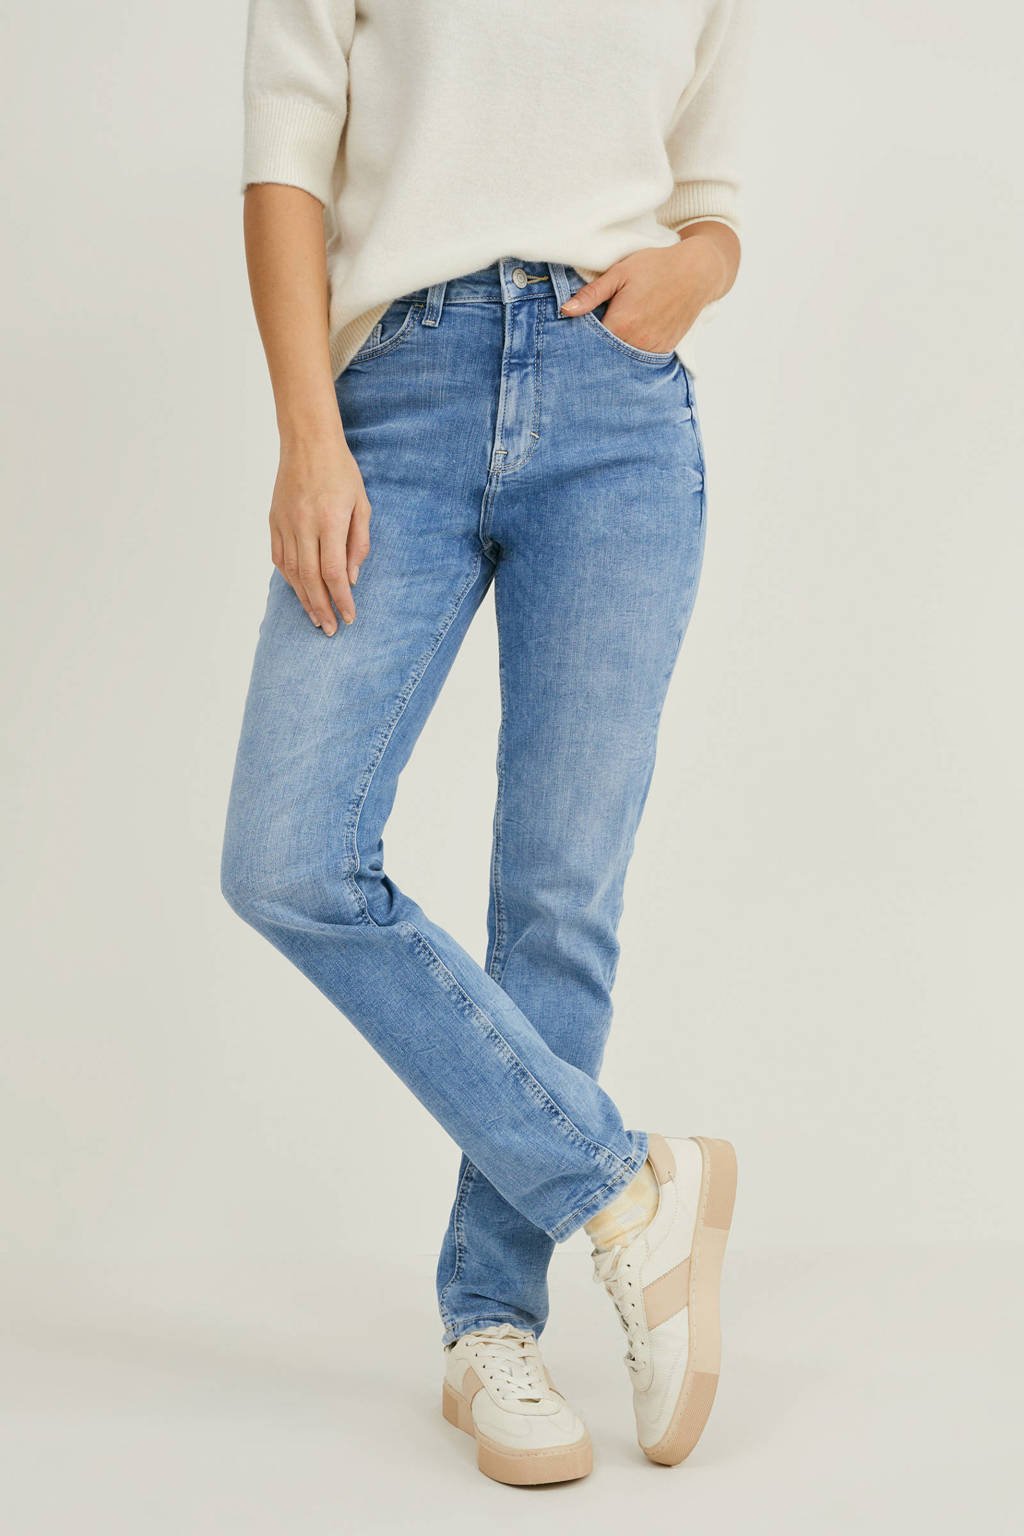 Bourgeon Vleien zwaartekracht C&A high waist slim fit jeans light denim | wehkamp